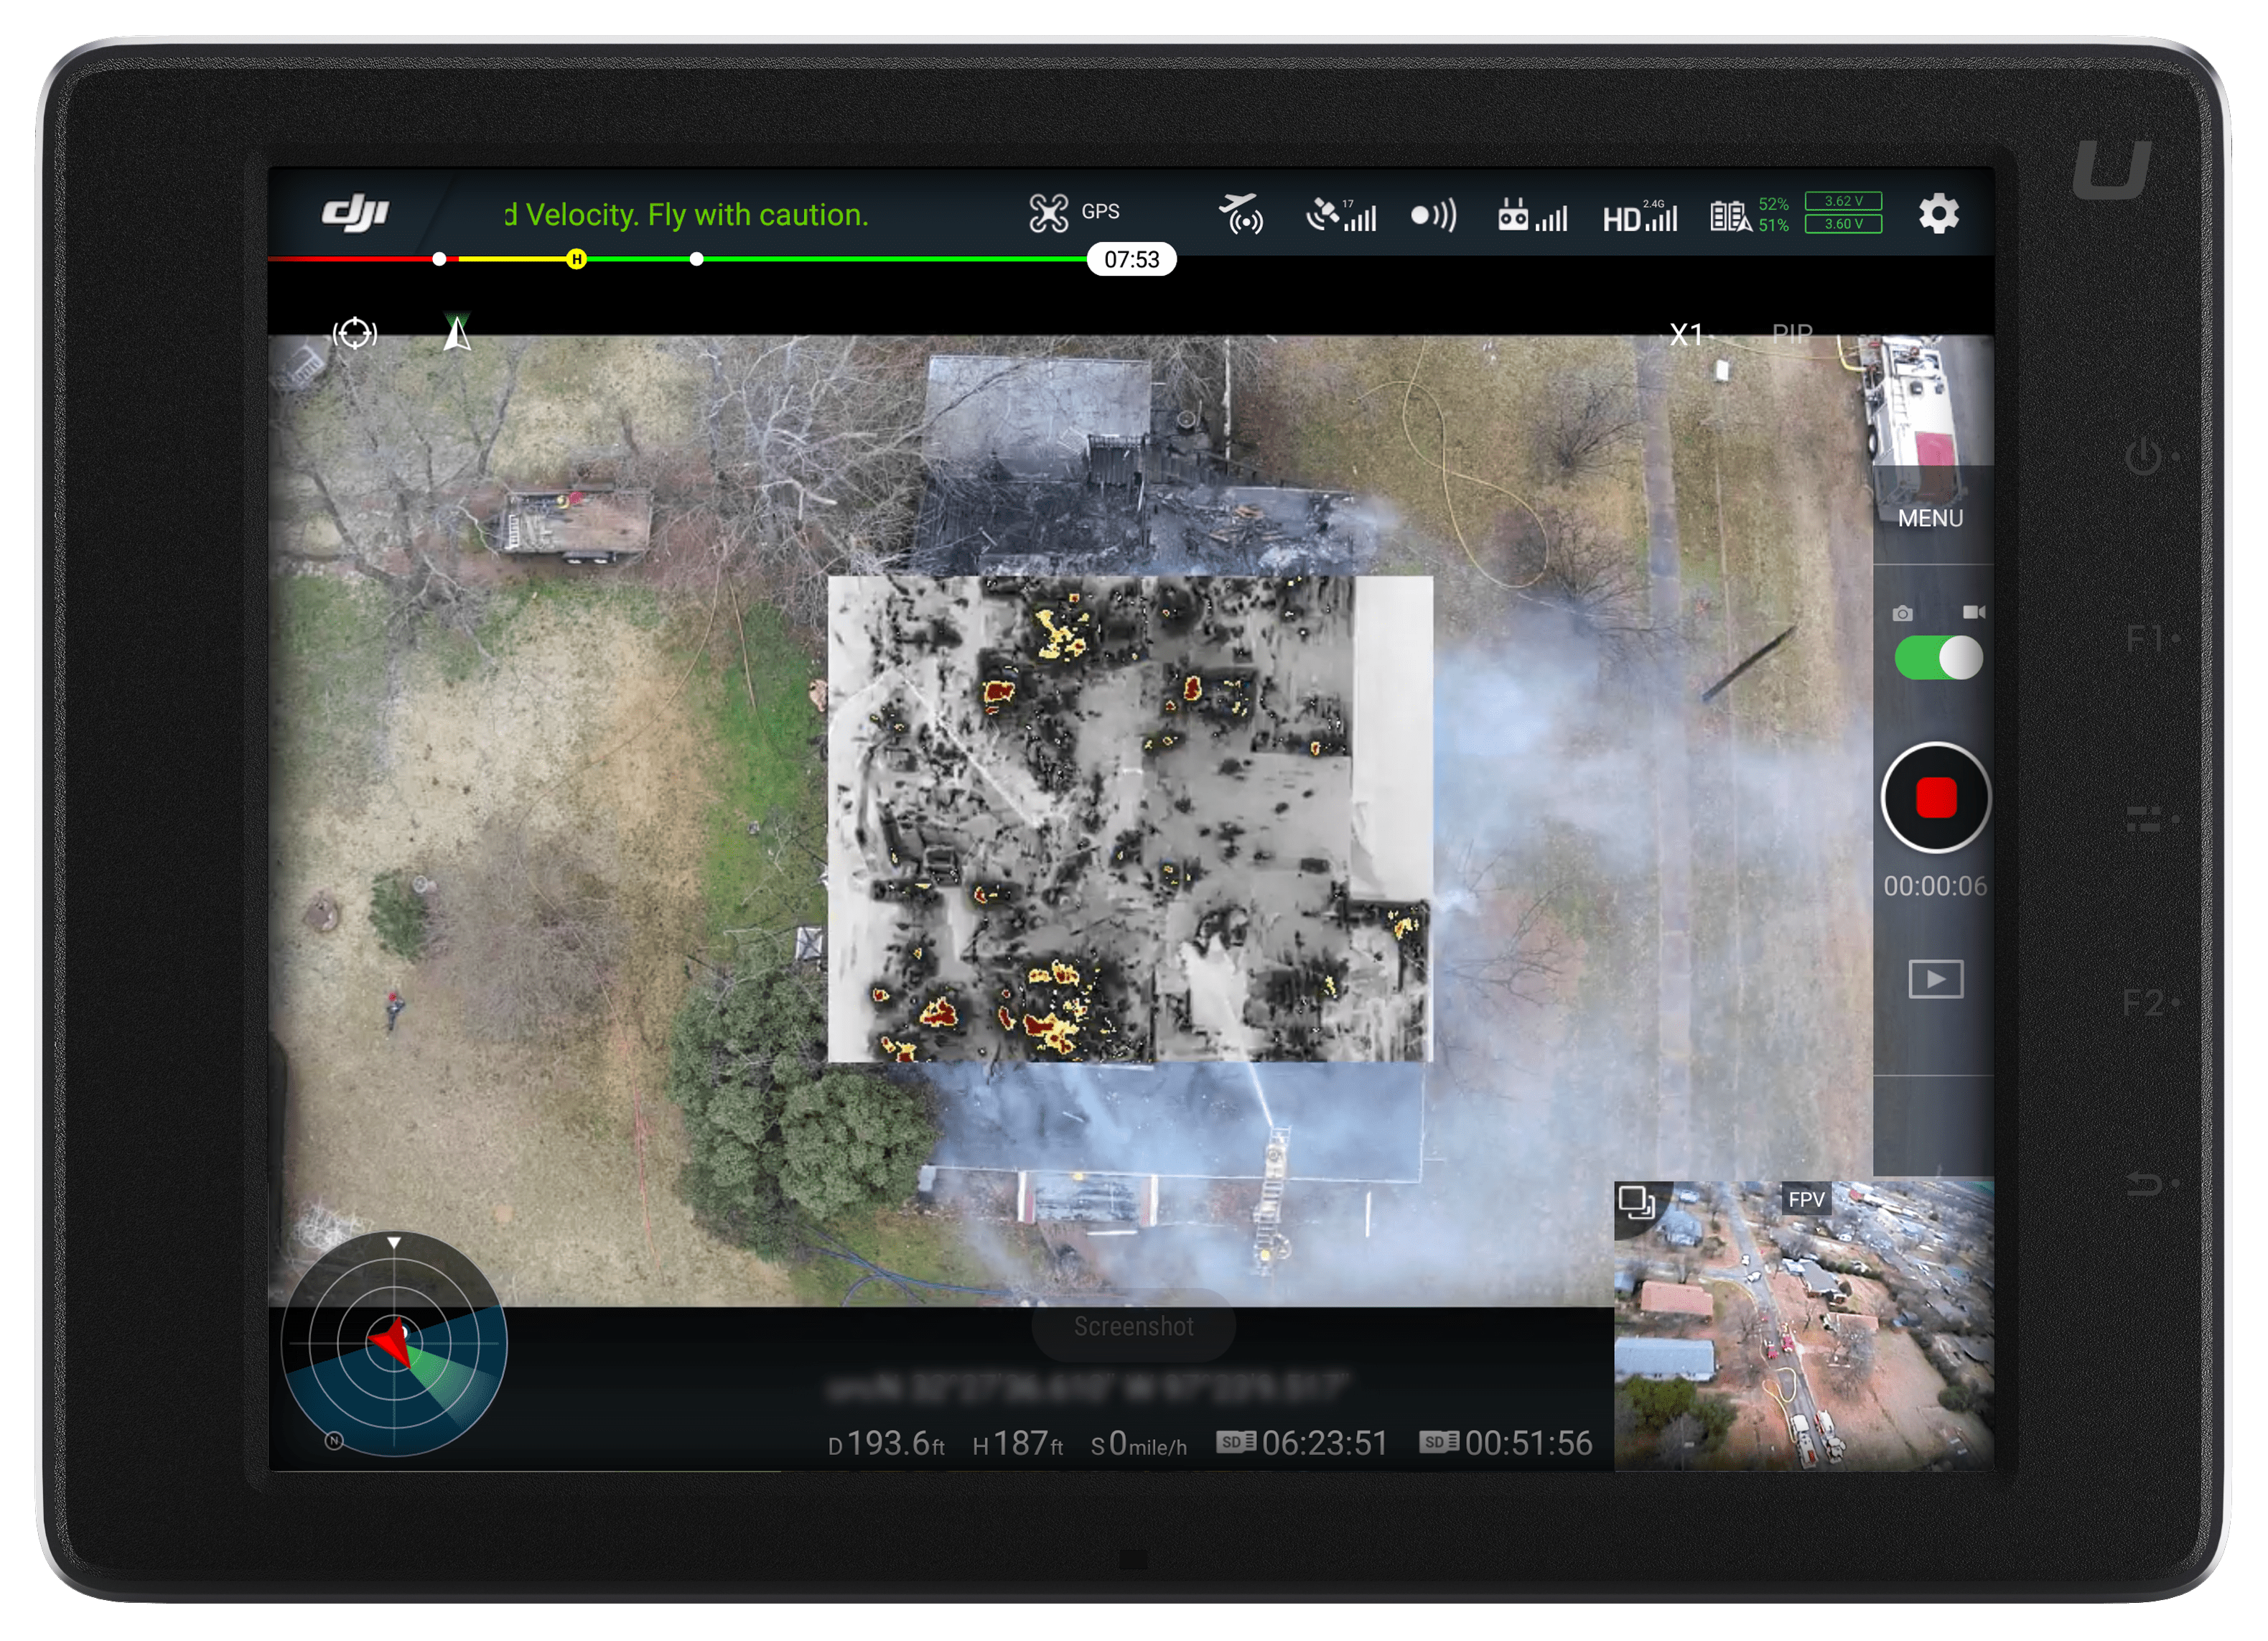 Structure Fire UI screengrab